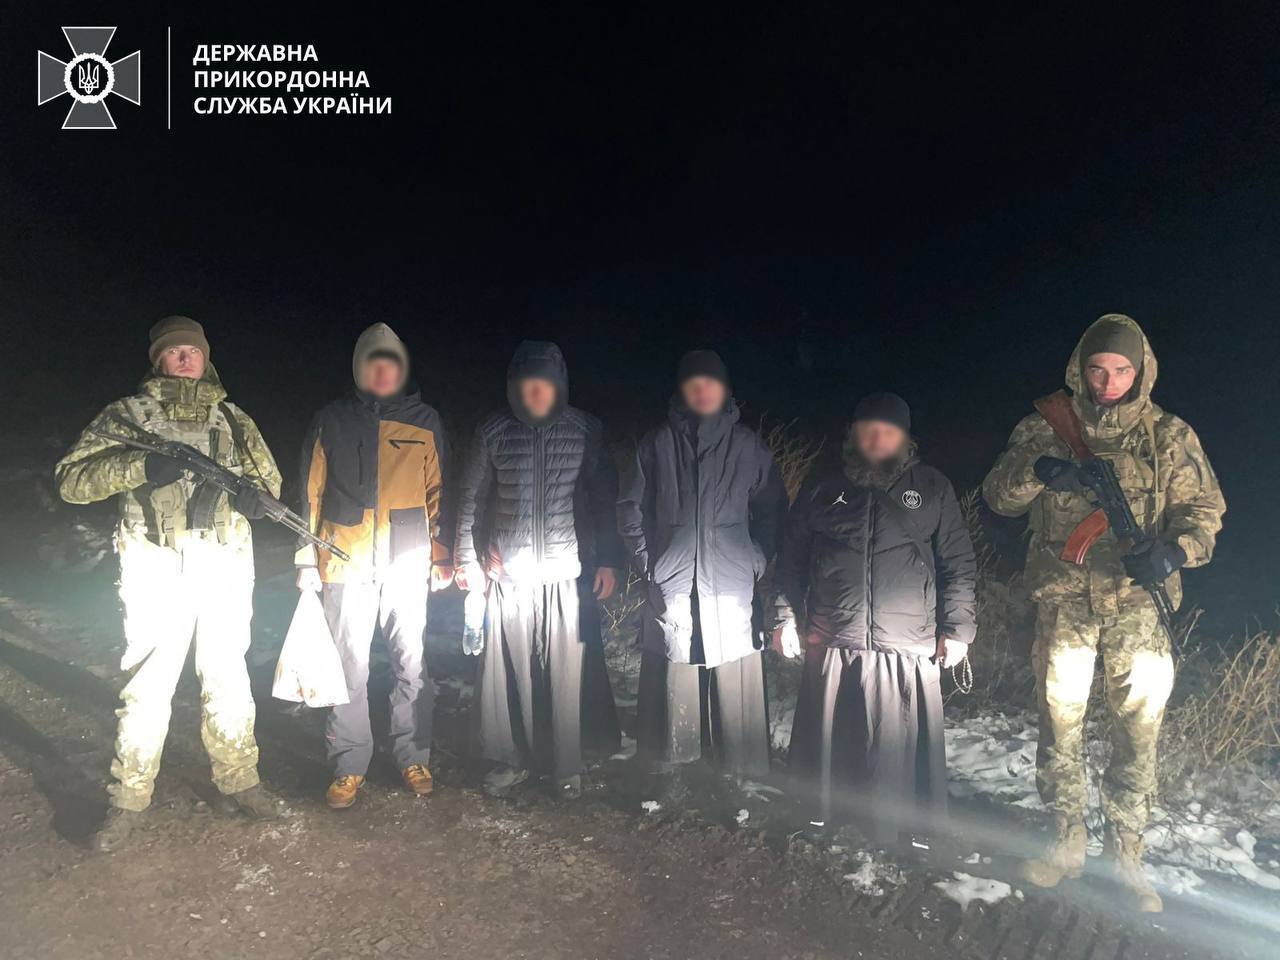 Біля кордону з Молдовою спіймали ухилянтів у вбранні батюшок: "маскарад" втікачів швидко викрили. Фото 